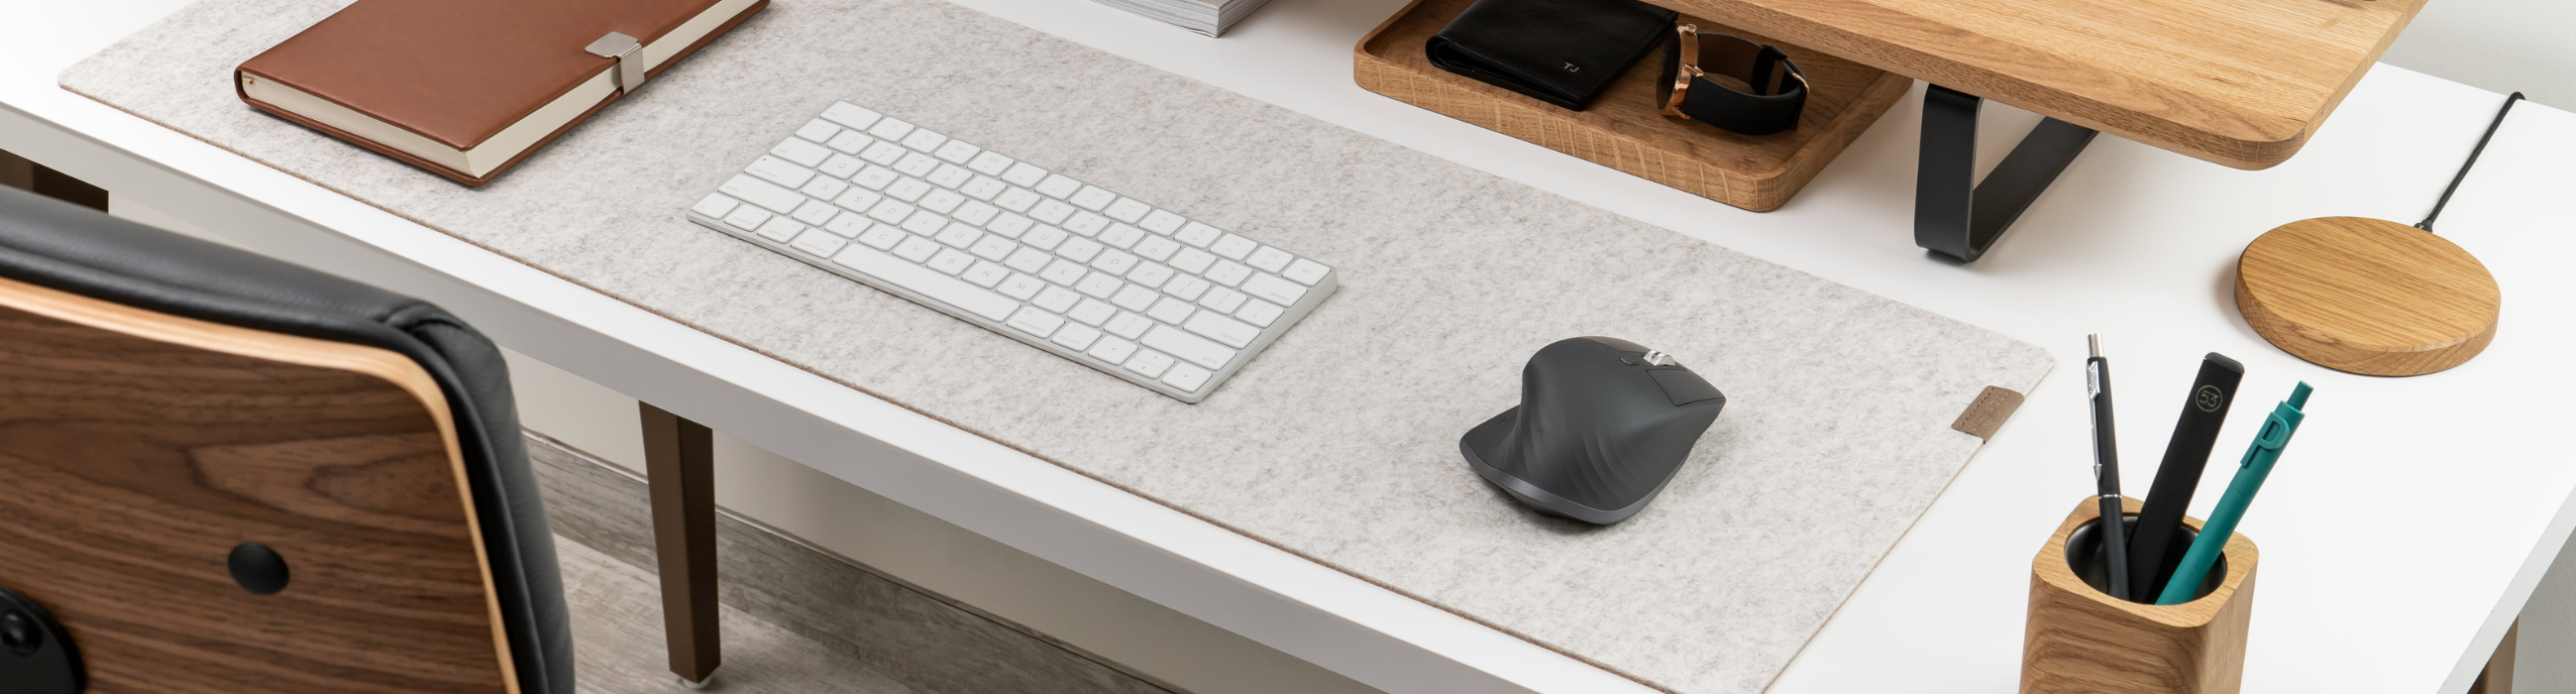 Schreibtisch pad Schreibtischschutzmatte - Dual Side Pu Leder